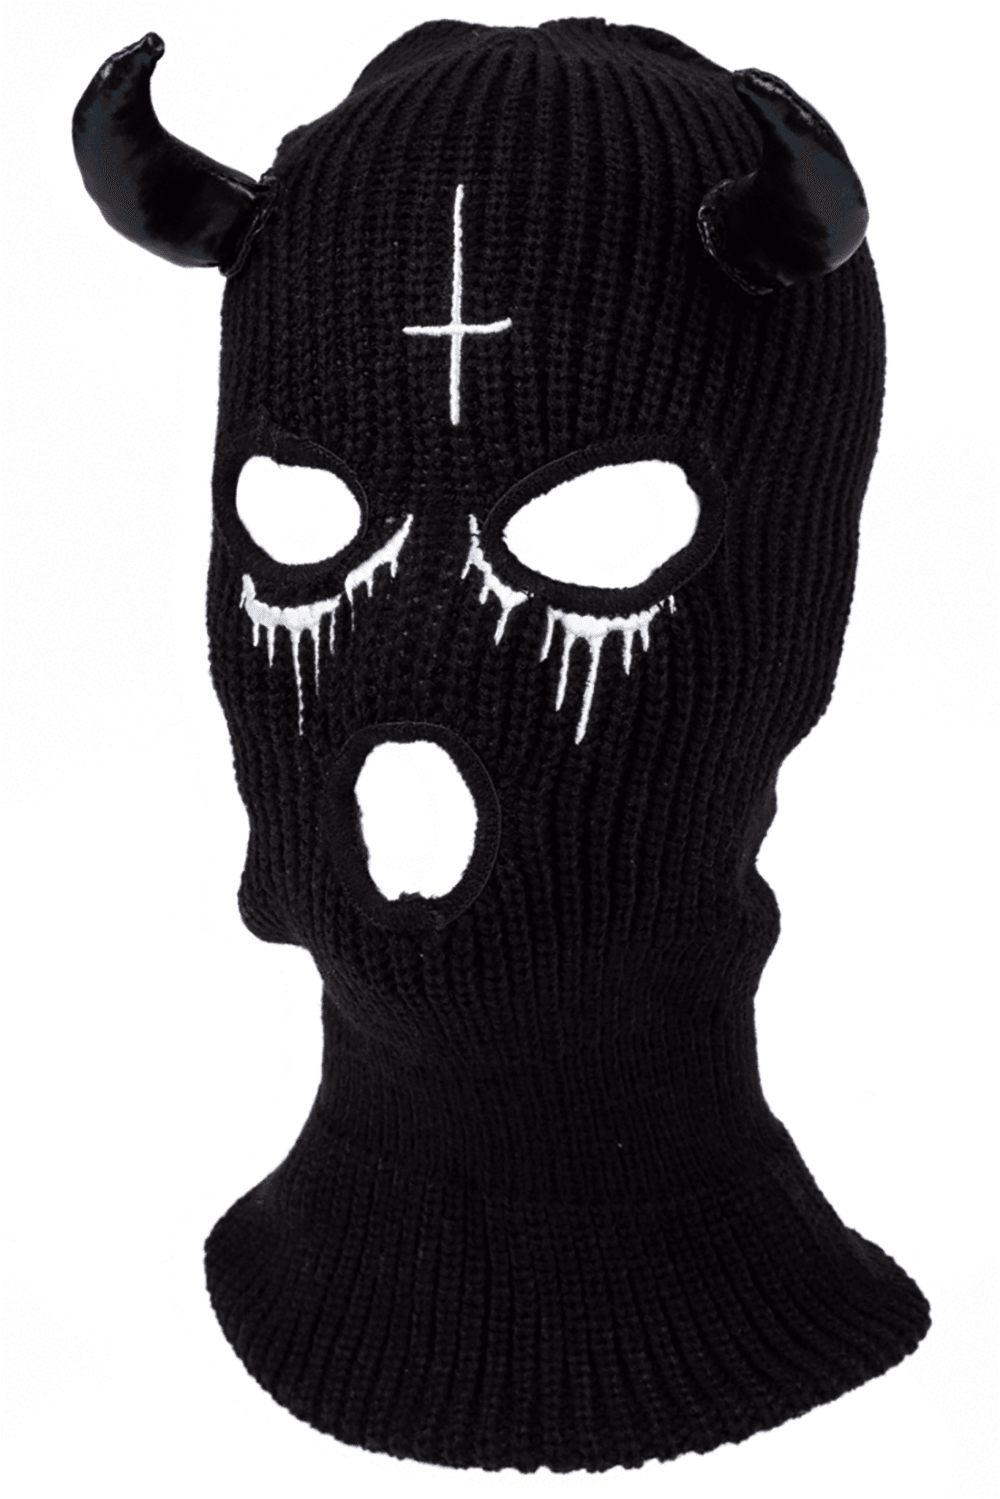 Too Fast Bloody Hell Embroidered Balaclava Ski Mask - VampireFreaks